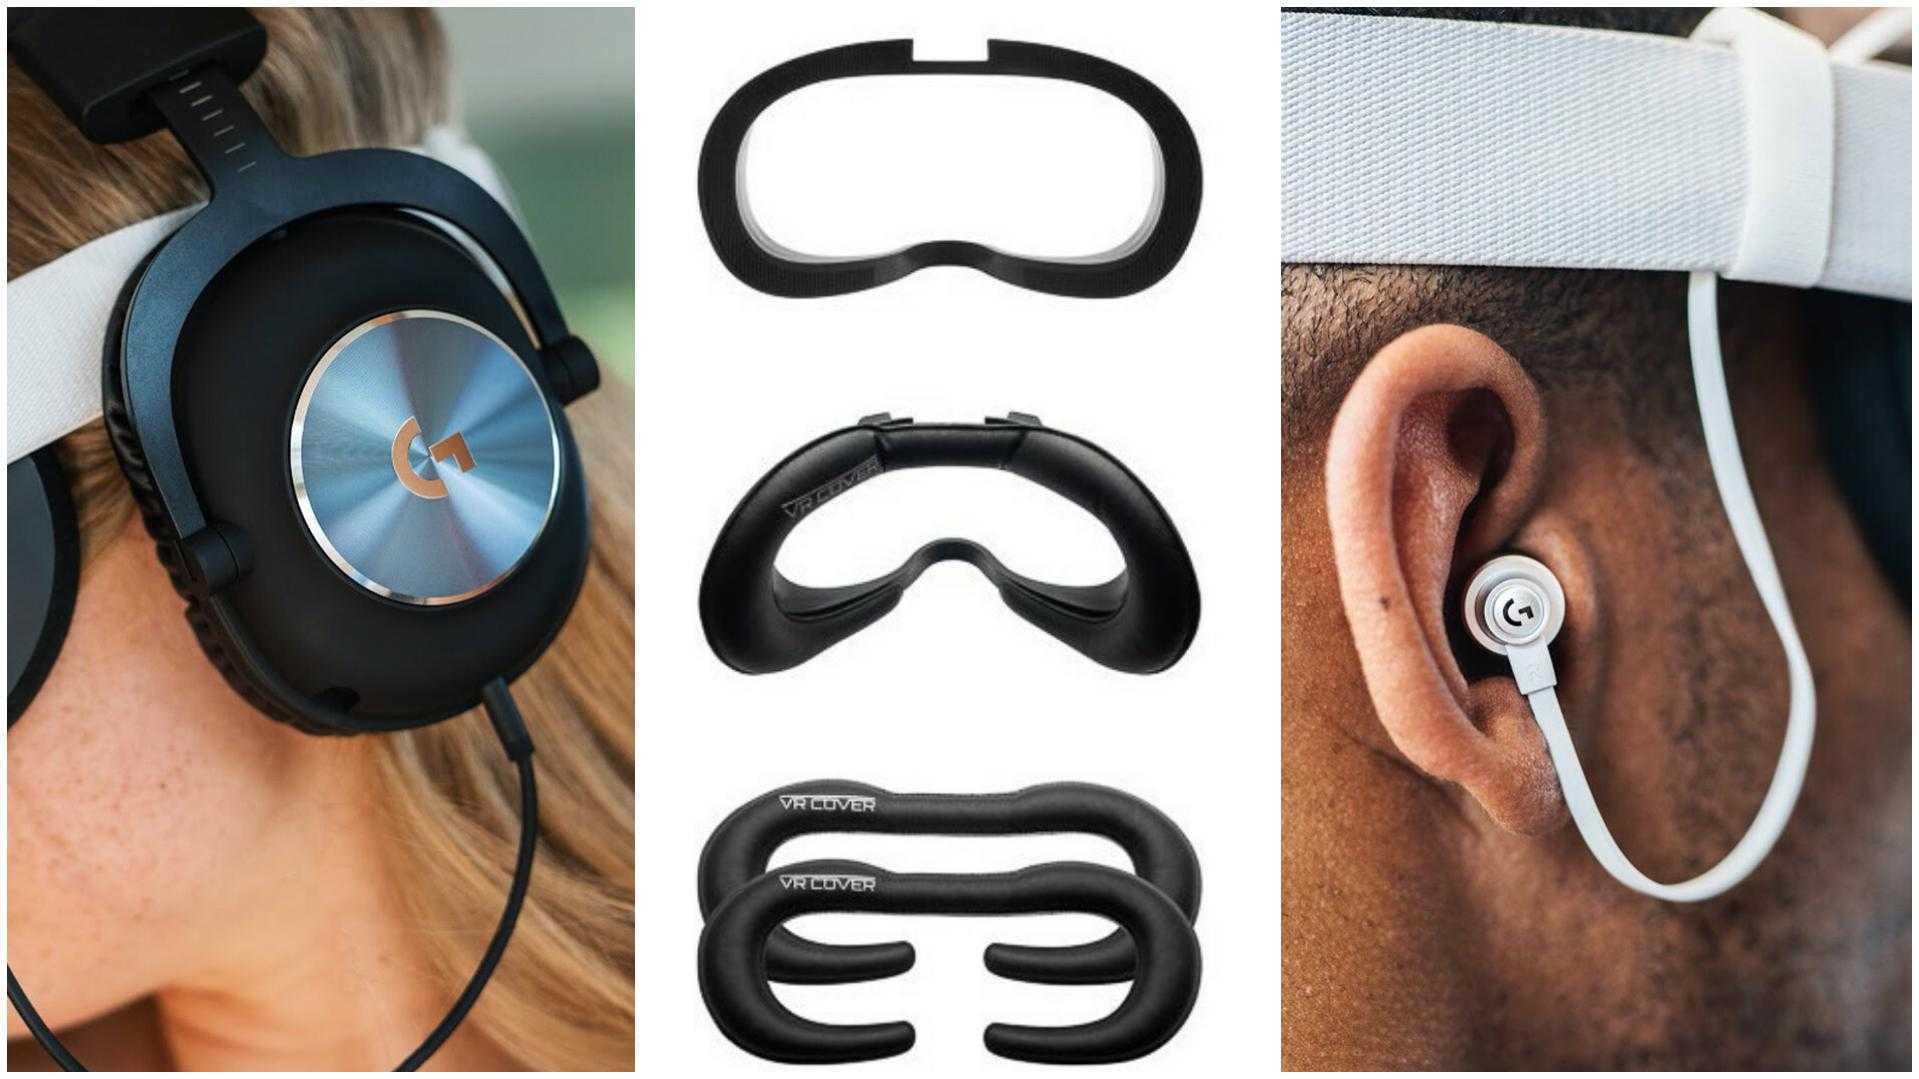 best headphones for oculus quest reddit